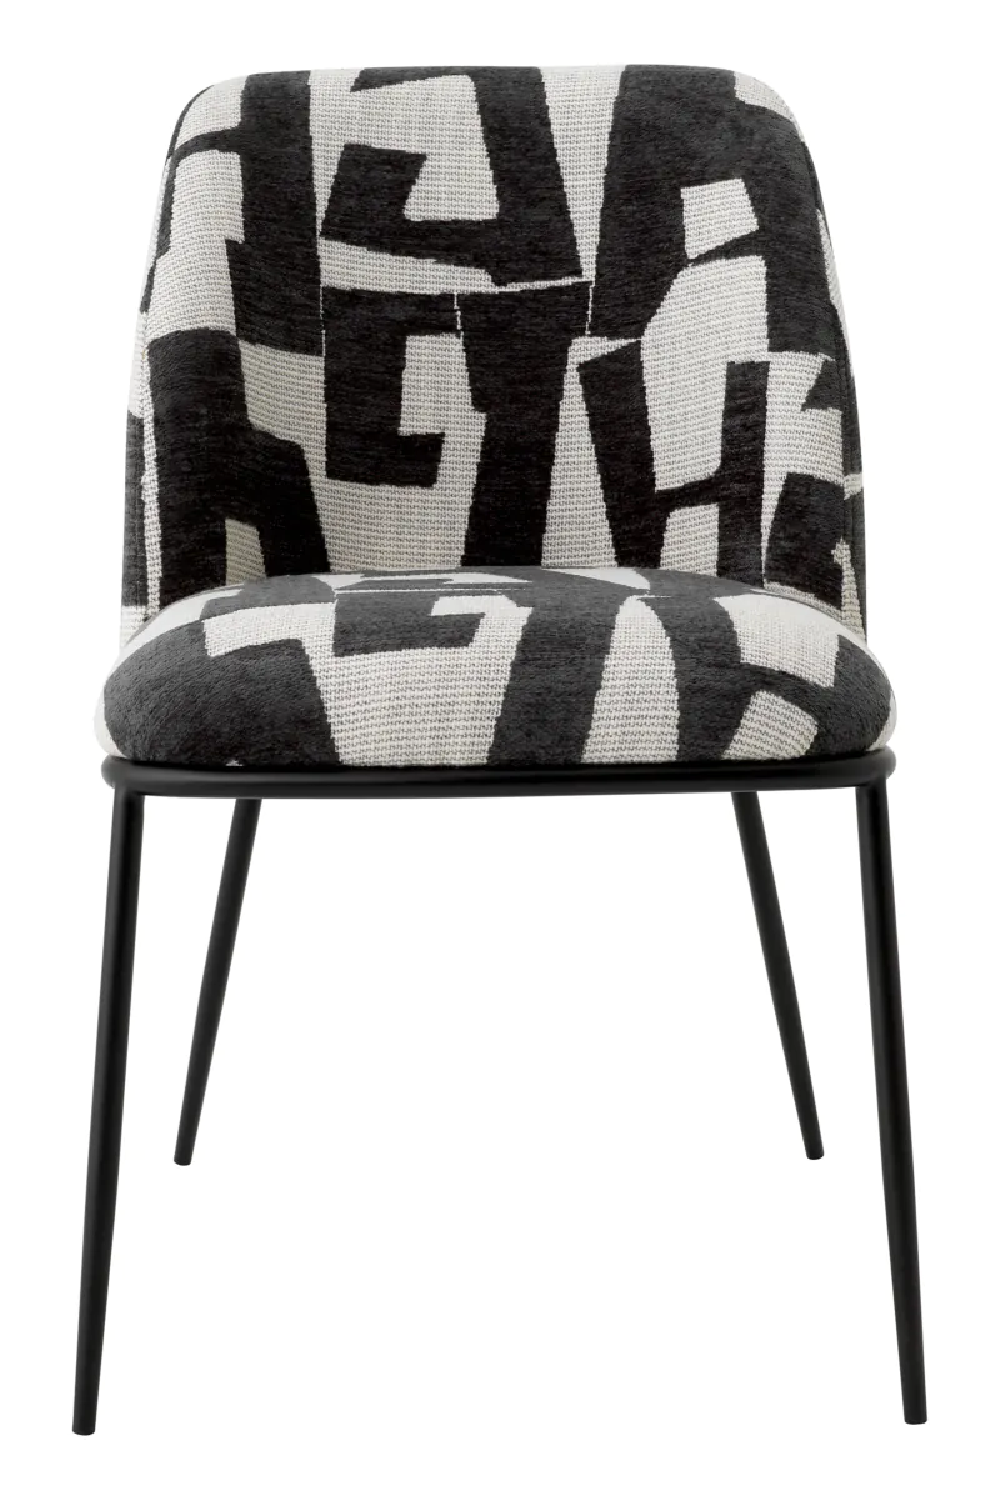 Printed Black Fabric Dining Chair | Eichholtz Caleb | Oroa.com